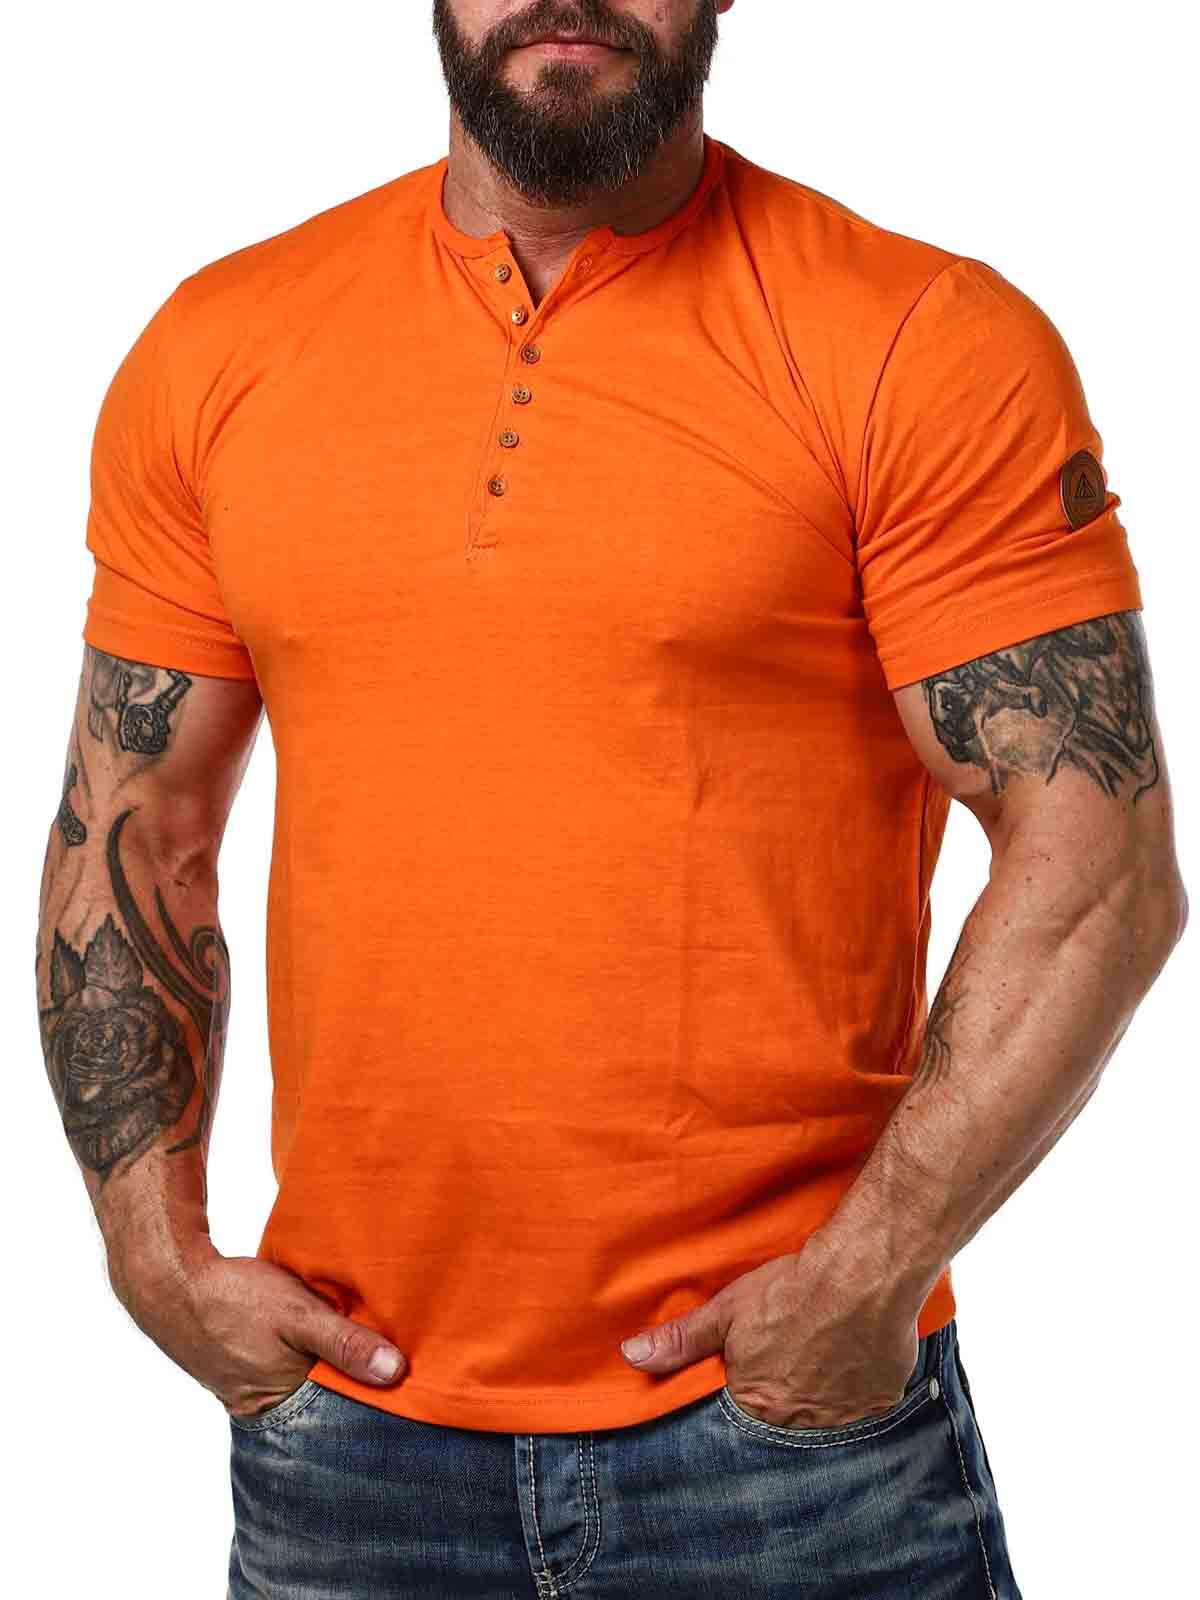 RD Zuto T-shirt - Orange